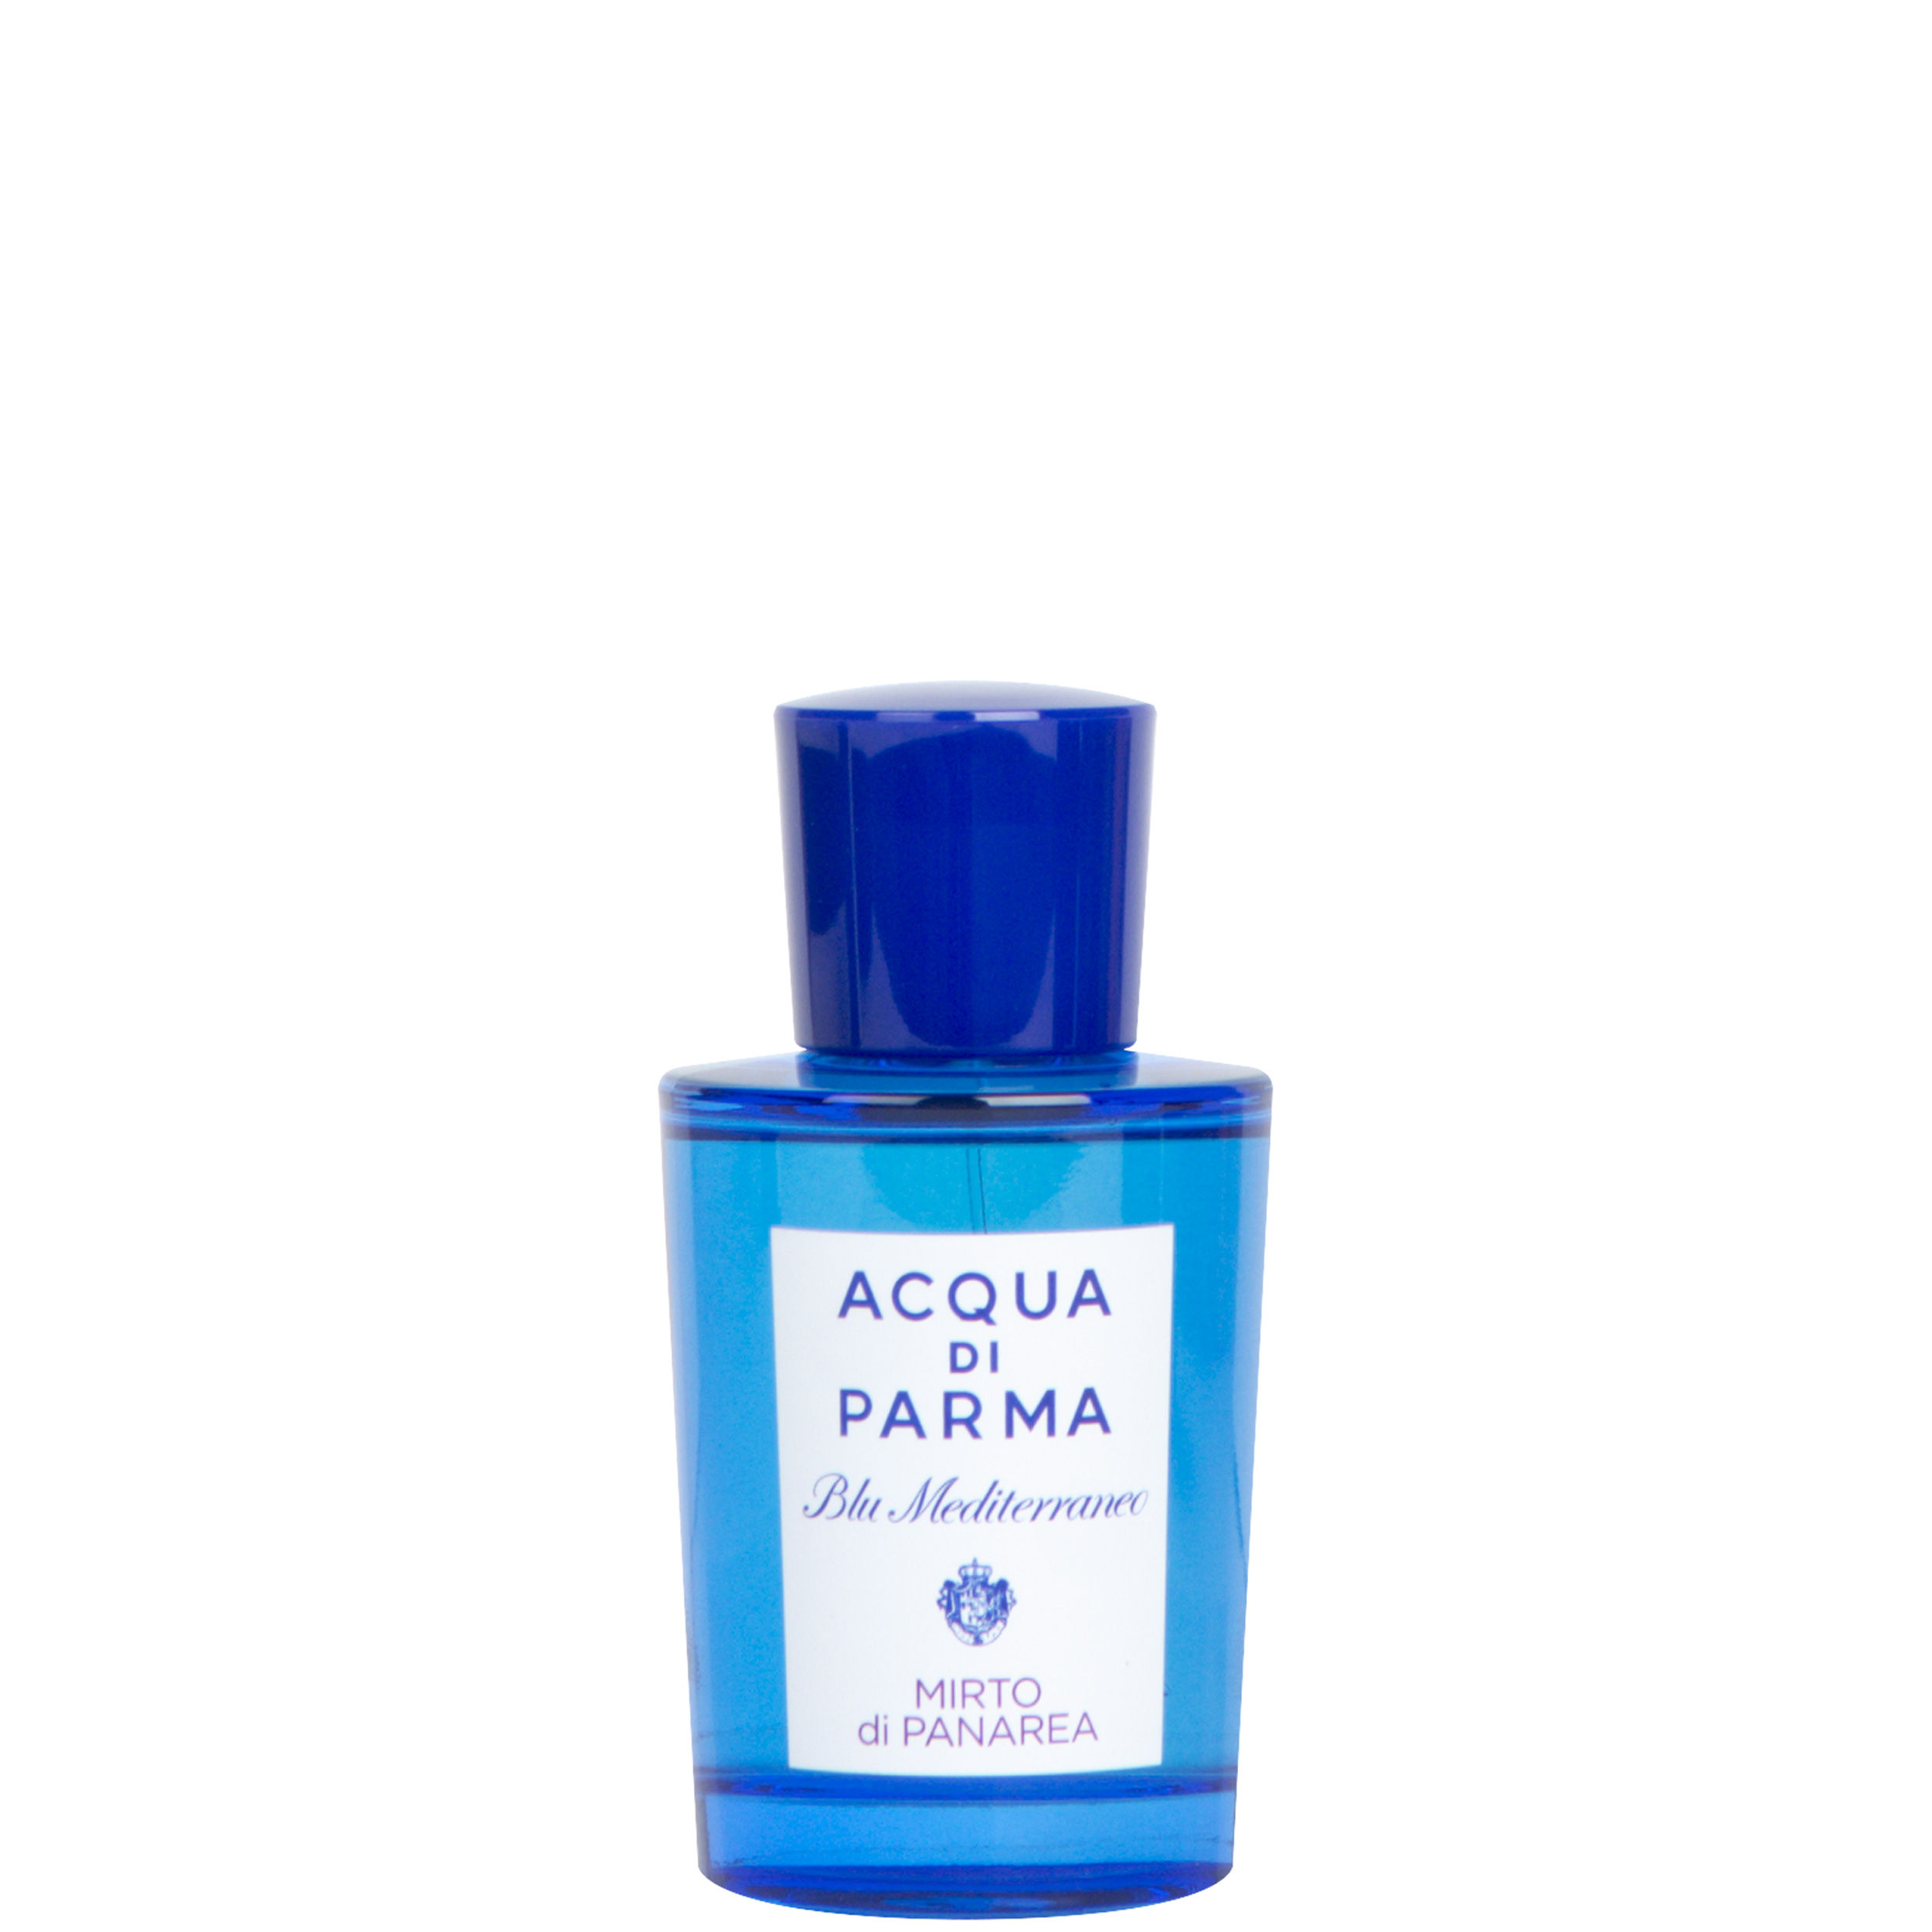 Acqua Di Parma ’Blue Med’ Mirto Di Panarea 75ml Spray